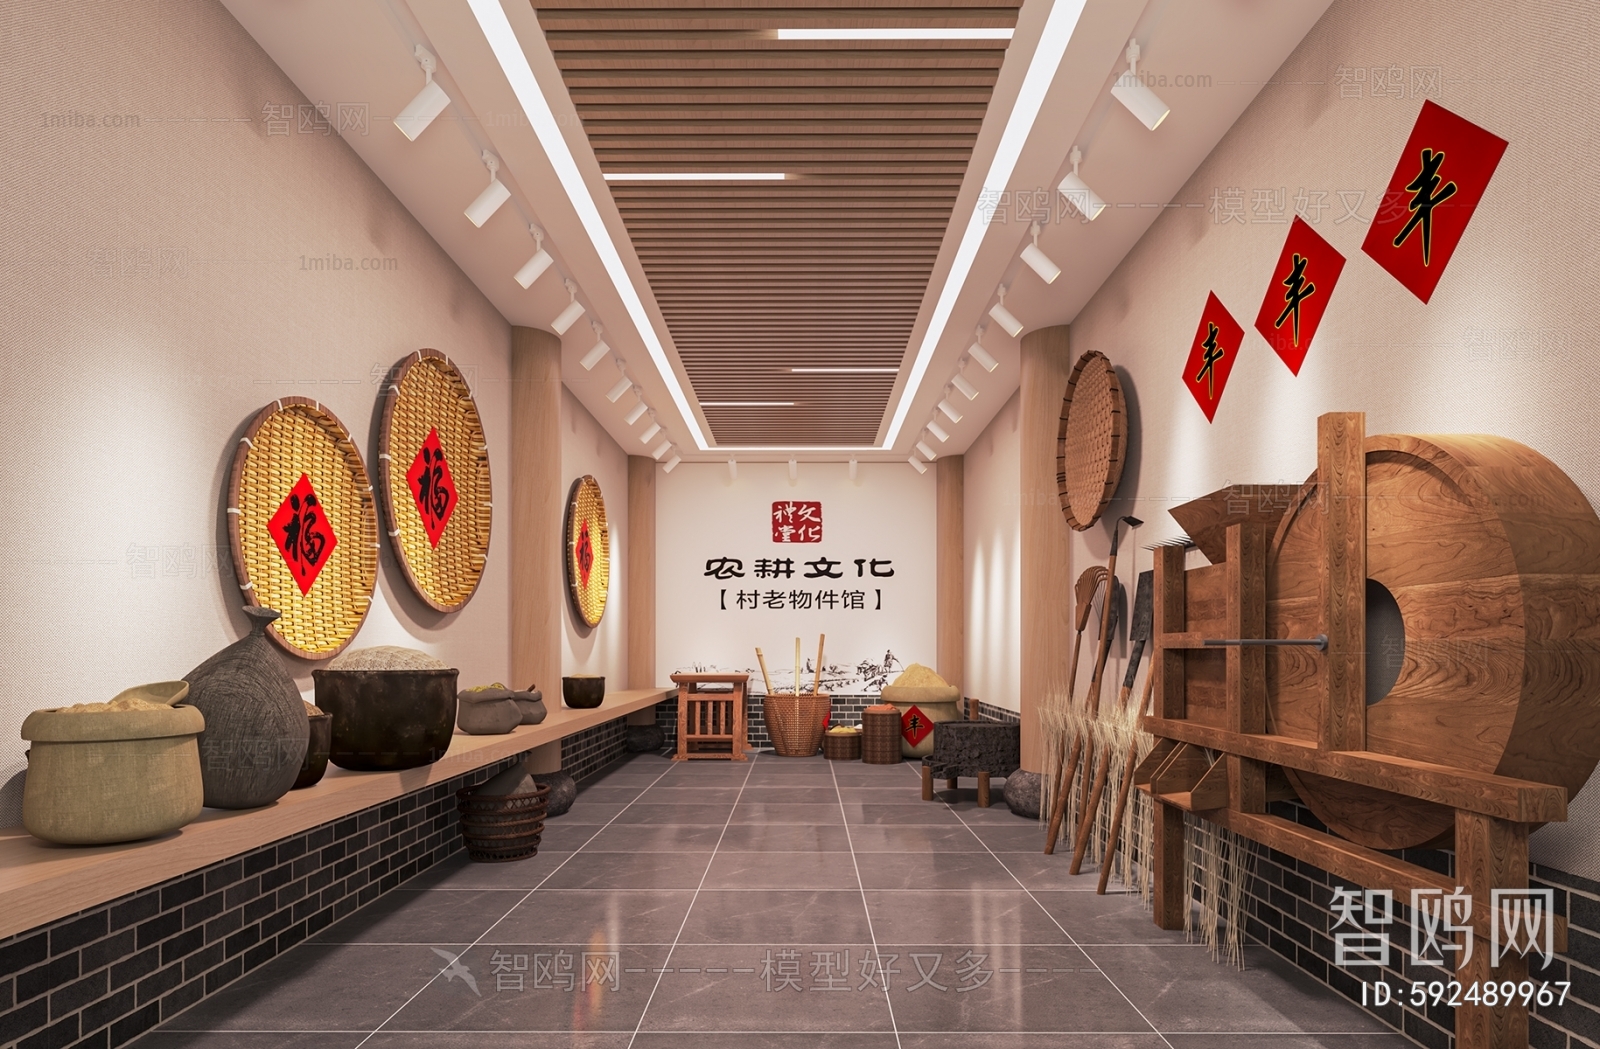 新中式农耕文化展厅